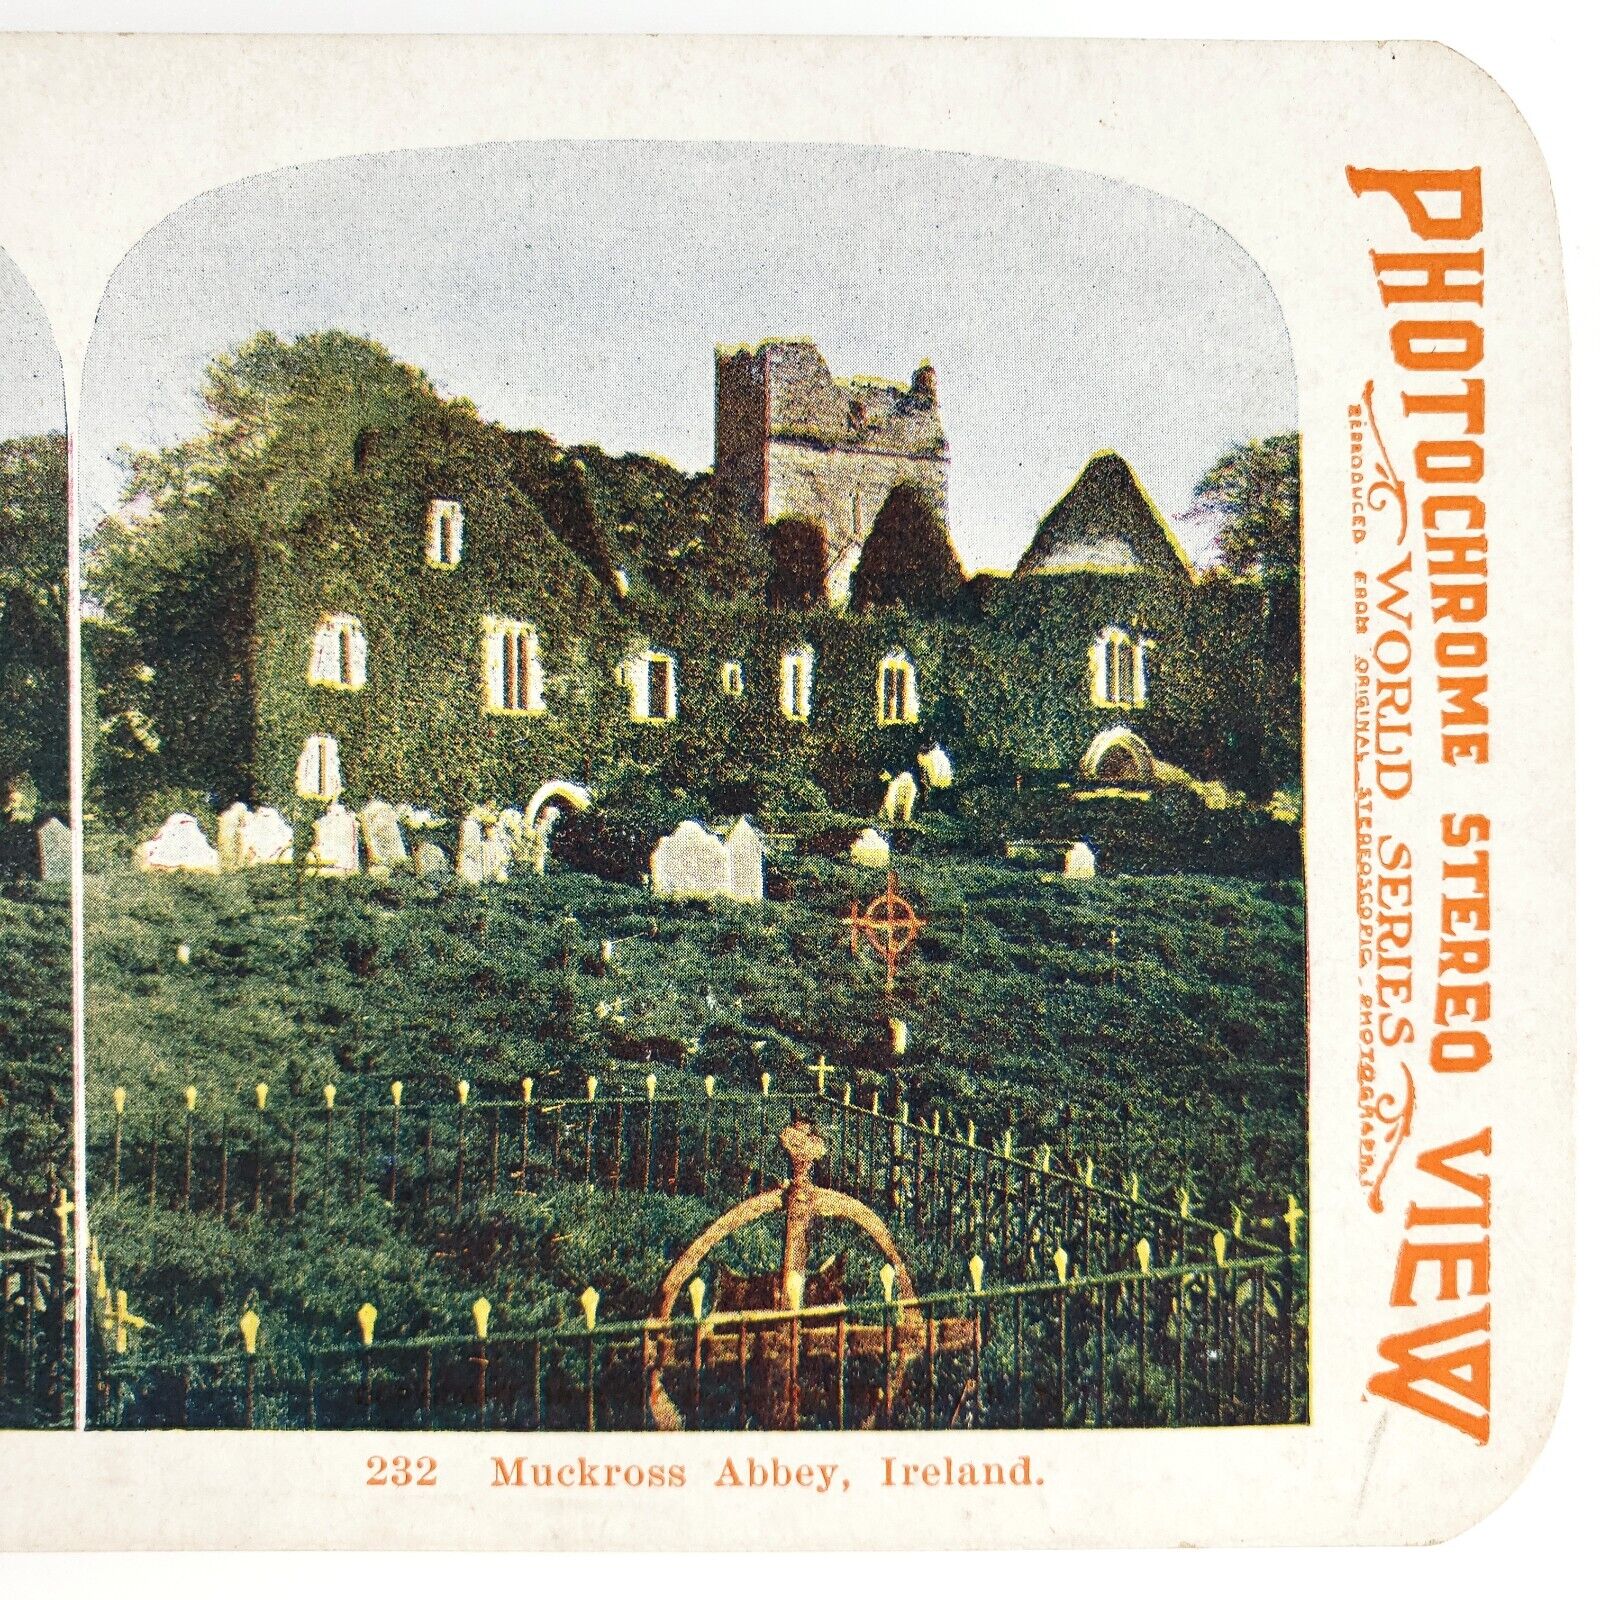 Kerry Ireland Muckross Abbey Stereoview c1905 Photochrome Irish Graveyard H1064